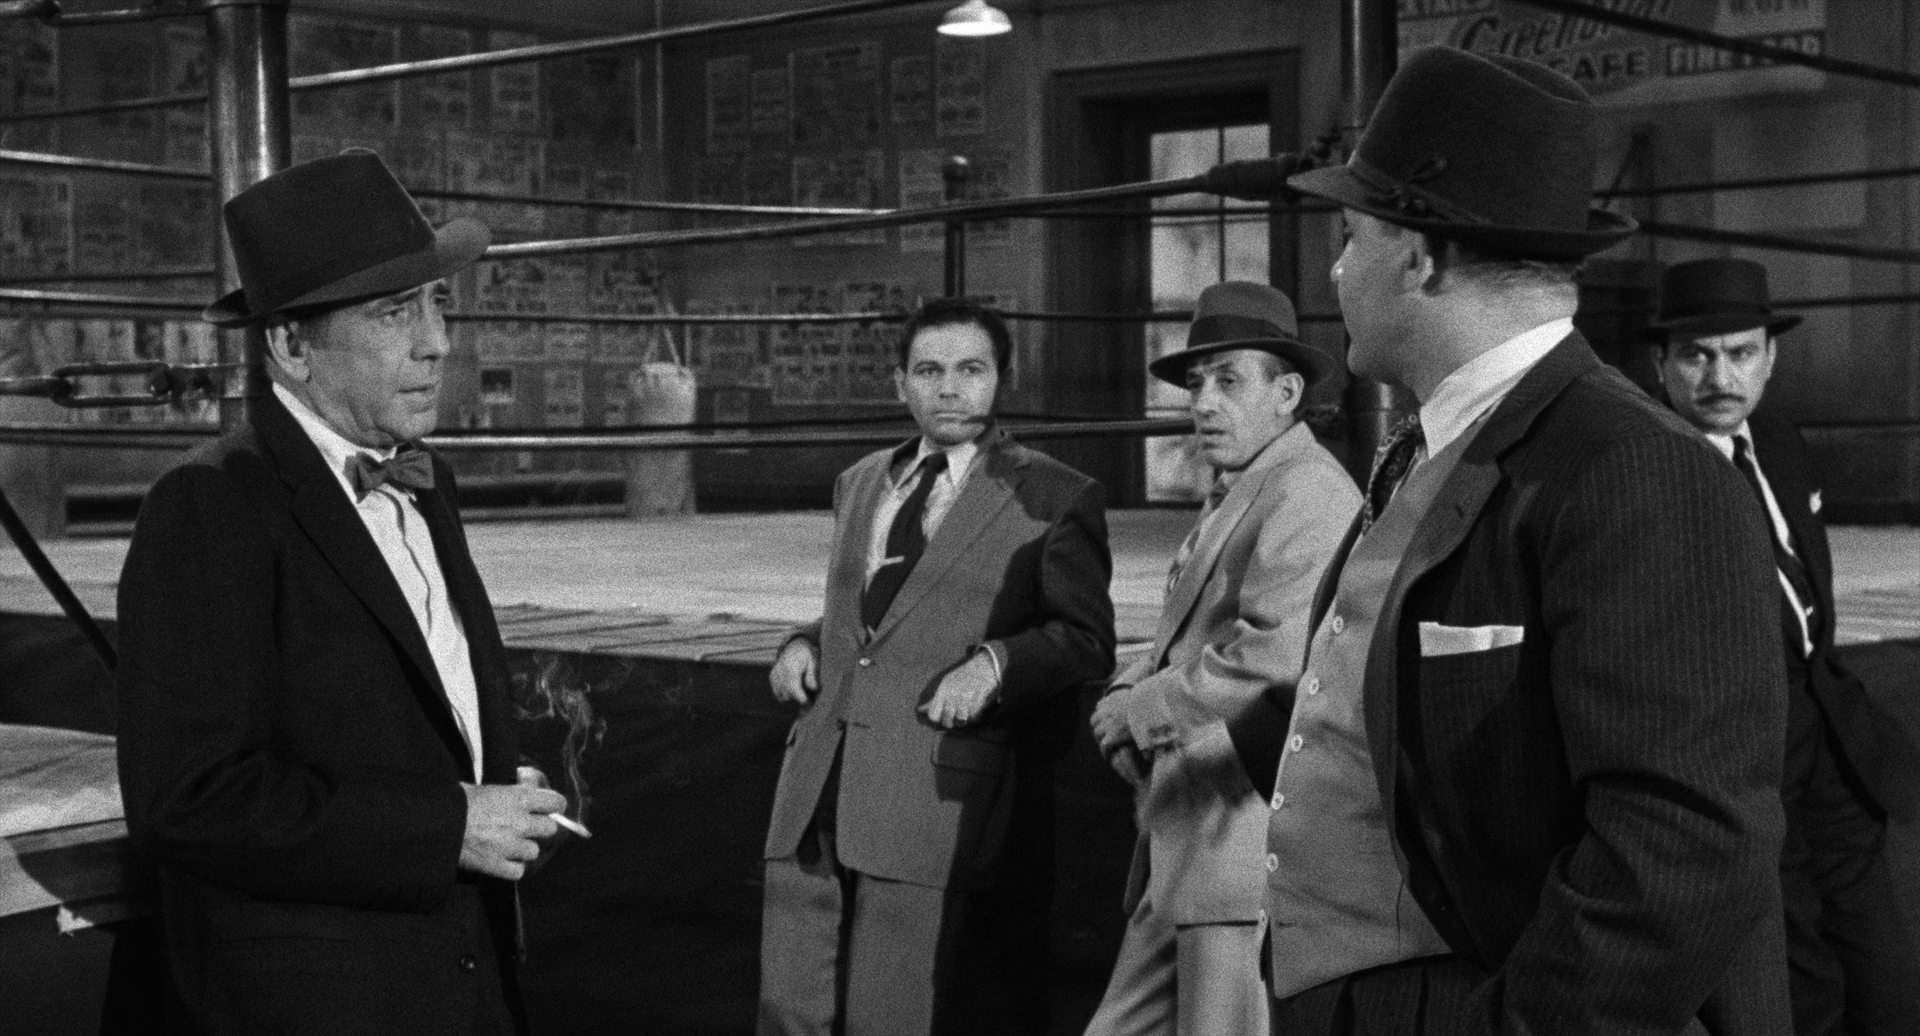 Schwarz-Weiß-Szene: Humphrey Bogart, mit Hut, Fliege und Zigarette in der Hand, steht links im Bild am Boxring, im Gespräch mit Rod Steiger als Boxpromoter, am Ring stehen außerdem drei zwielichtige Männer.